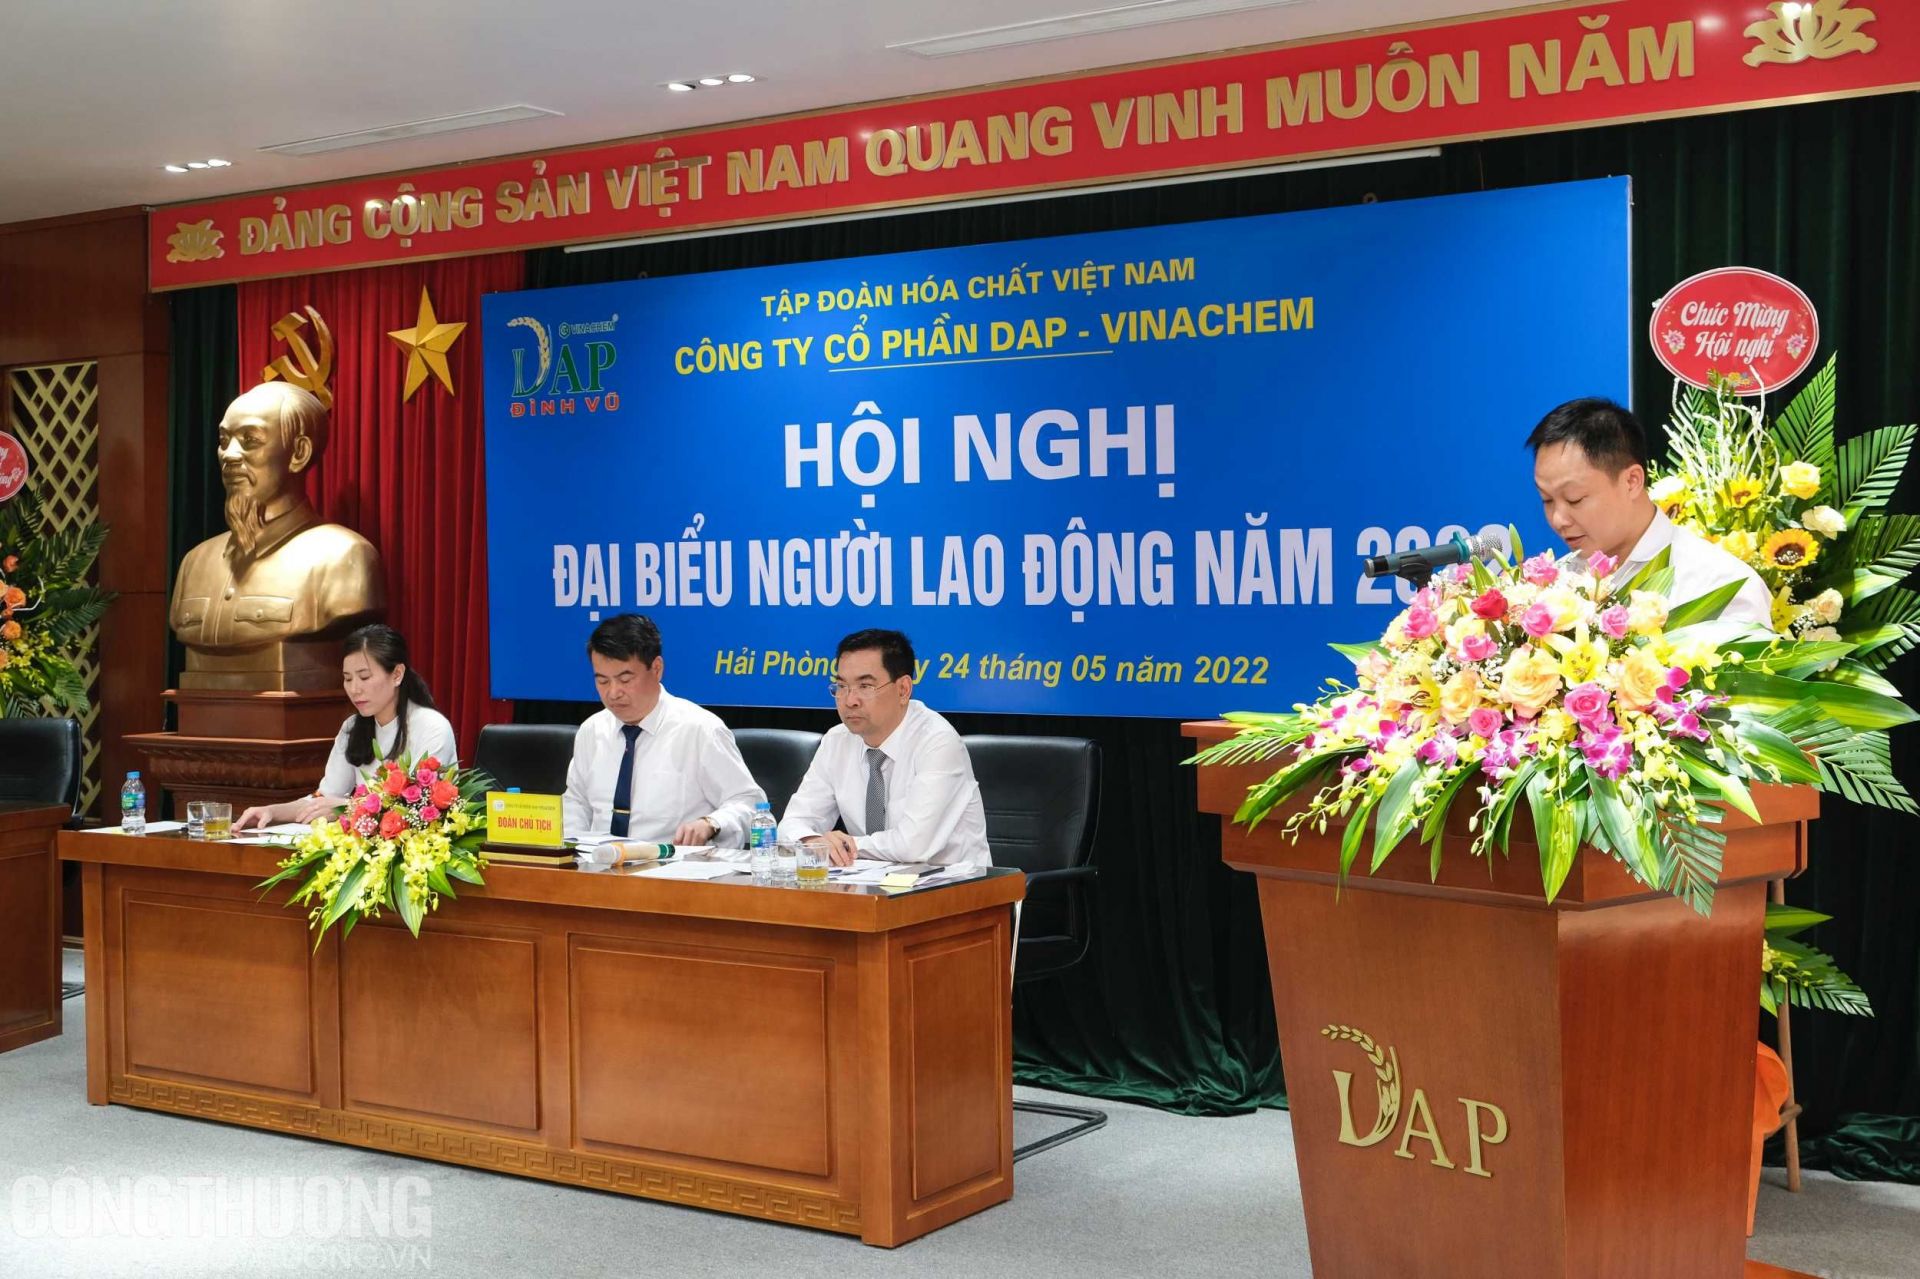 Hội nghị Đại biểu Người lao động năm 2022 của Công ty Cổ phần DAP-Vinachem